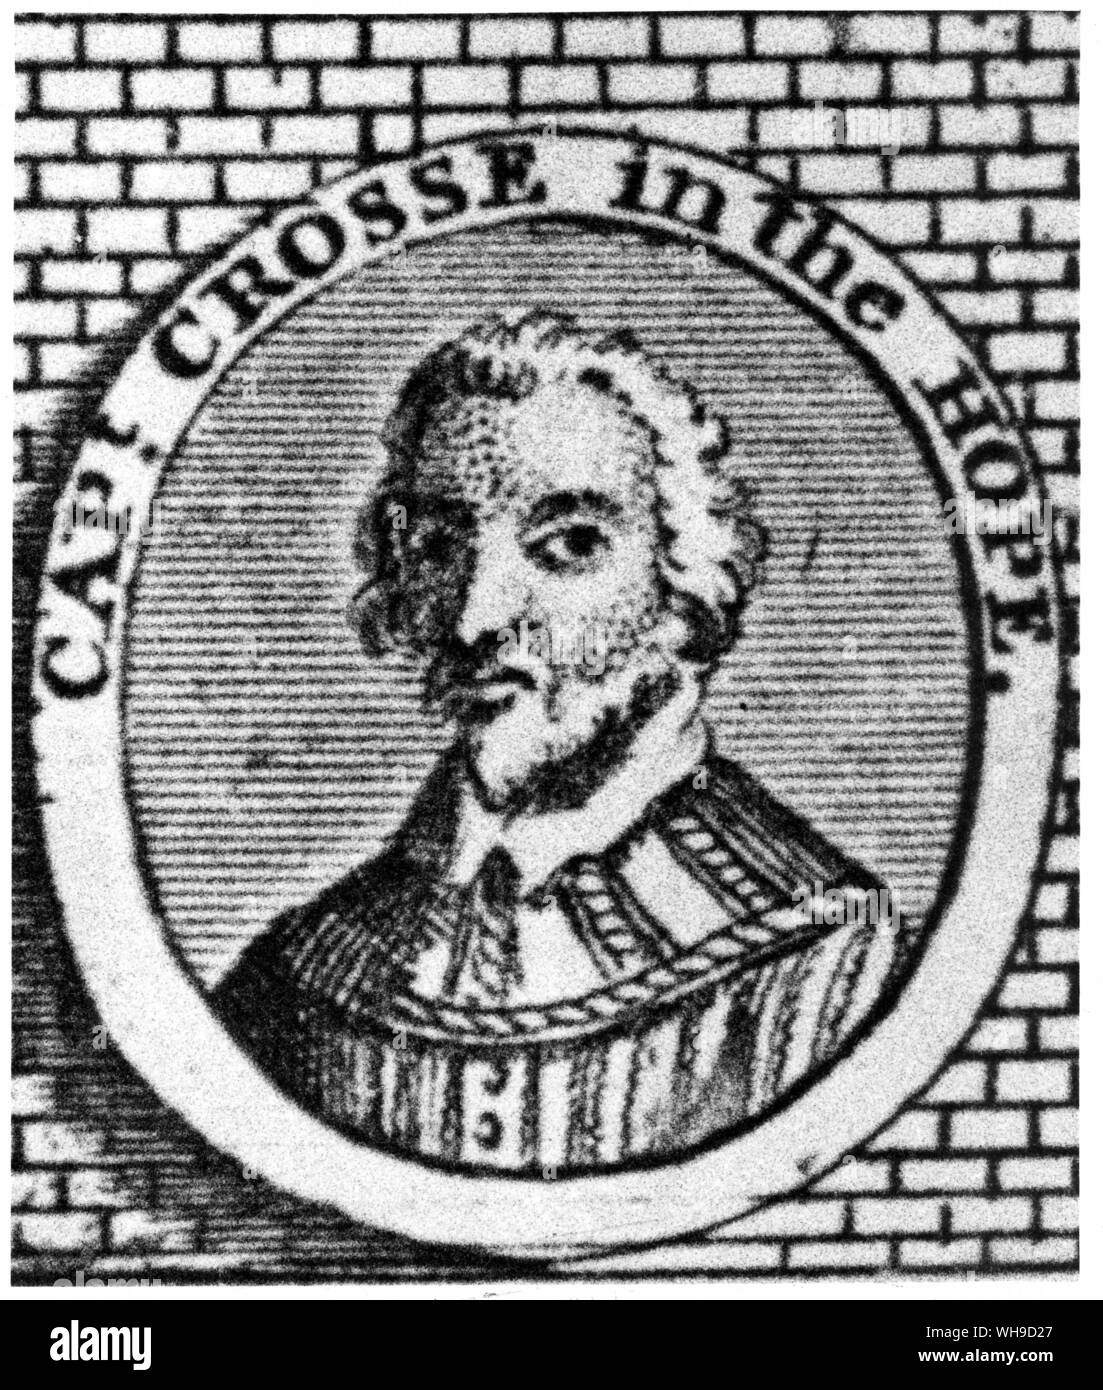 Le Capitaine Robert Crosse dans l'espoir.. qui a commandé une squadrom de navires de ravitaillement pour Sir Francis Drake en 1589 encore une fois l'expédition d'Espagne. Détail d'une gravure d'une tapisserie de pin Banque D'Images